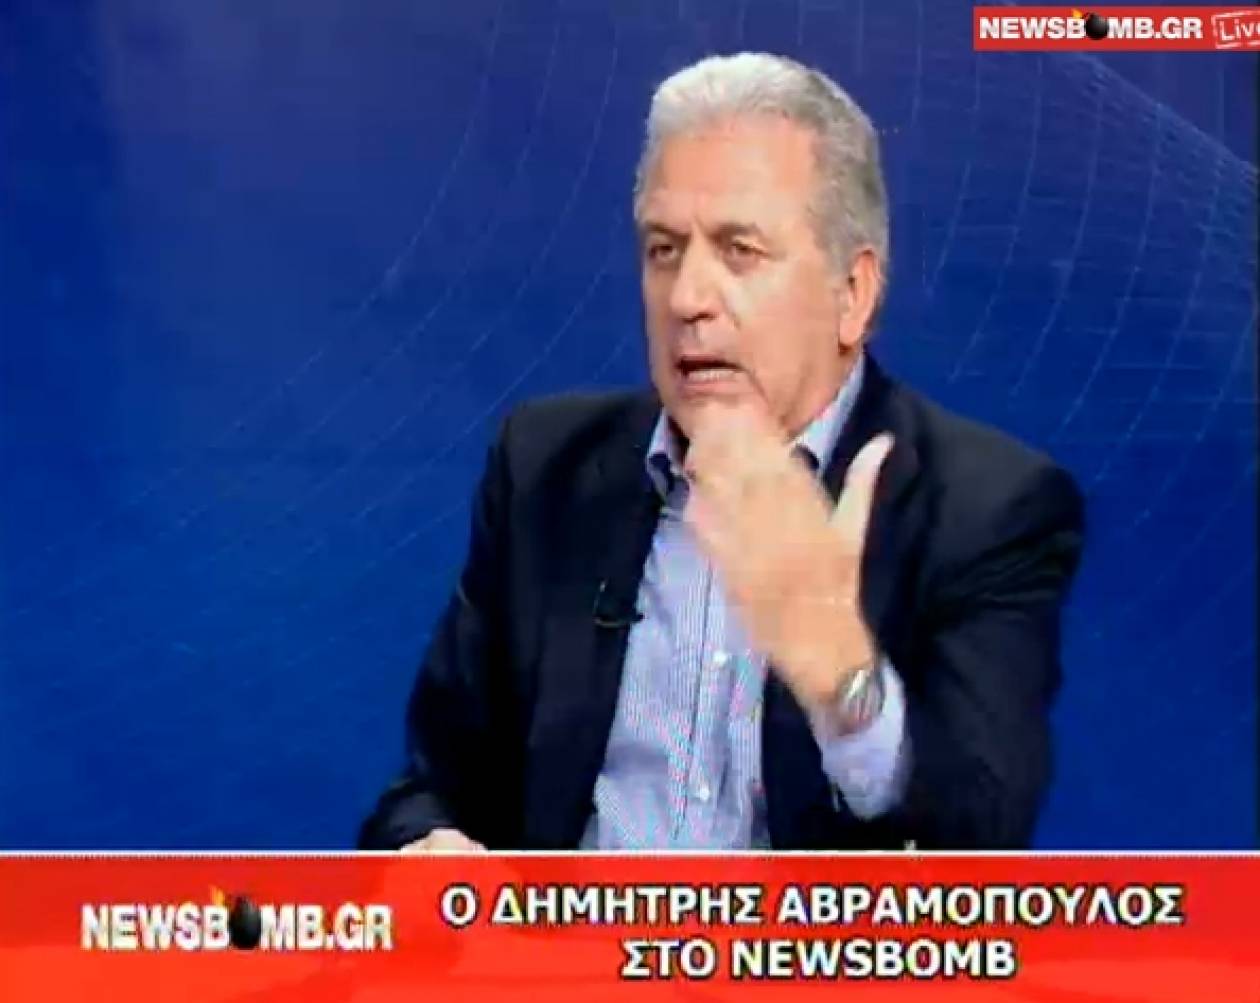 Δ. Αβραμόπουλος: Ο δρόμος μετά τις εκλογές θα είναι δύσκολος